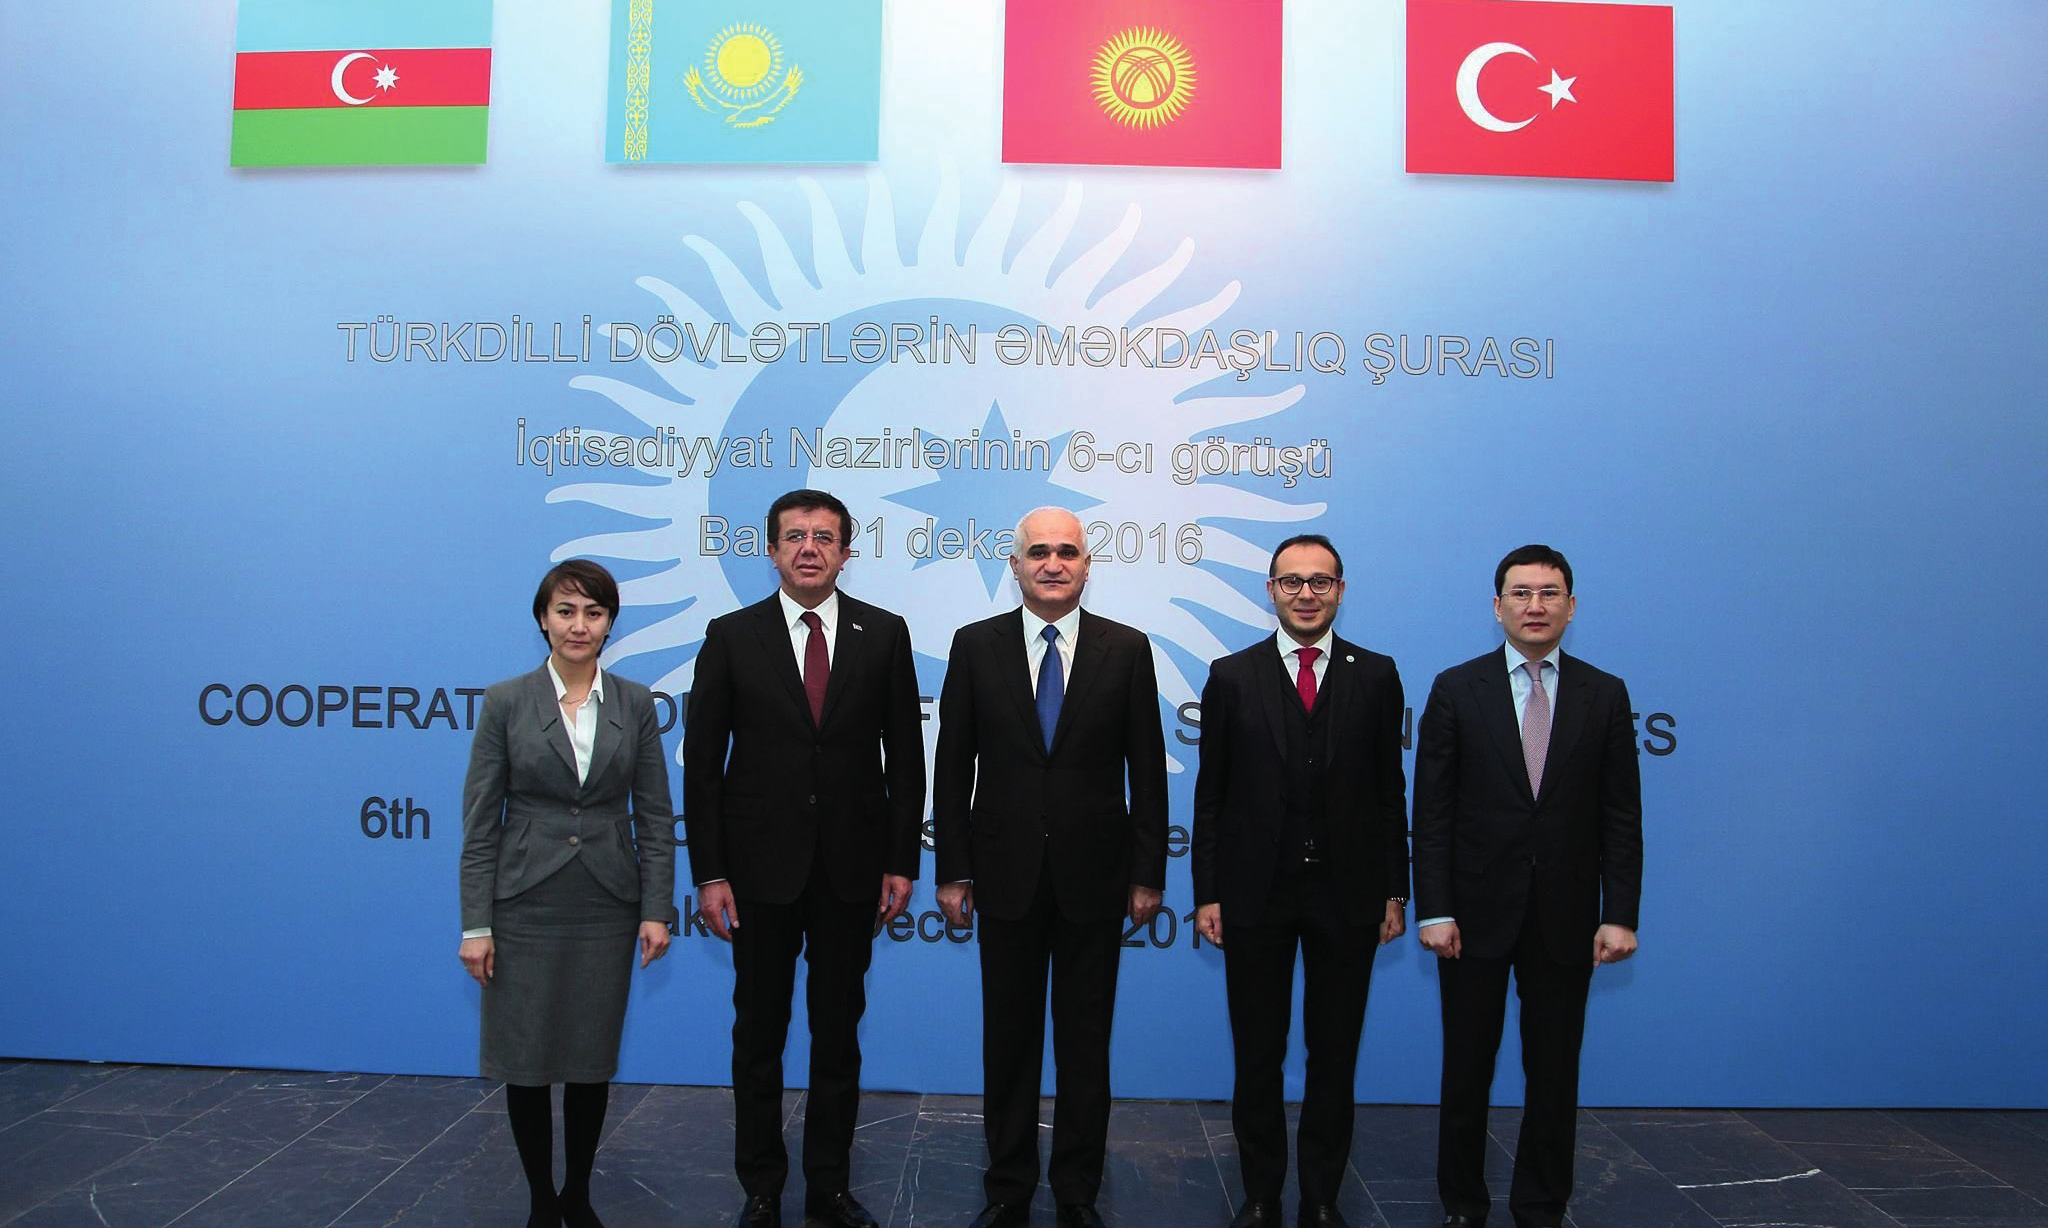 BAKÜ DE TÜRK KONSEYİ TOPLANTISI GERÇEKLEŞTİ 21 Aralık 2016 tarihinde Bakü de Türk Dili Konuşan Ülkeler İşbirliği Konseyi Ekonomi Bakanları 6. Toplantısı gerçekleşti.